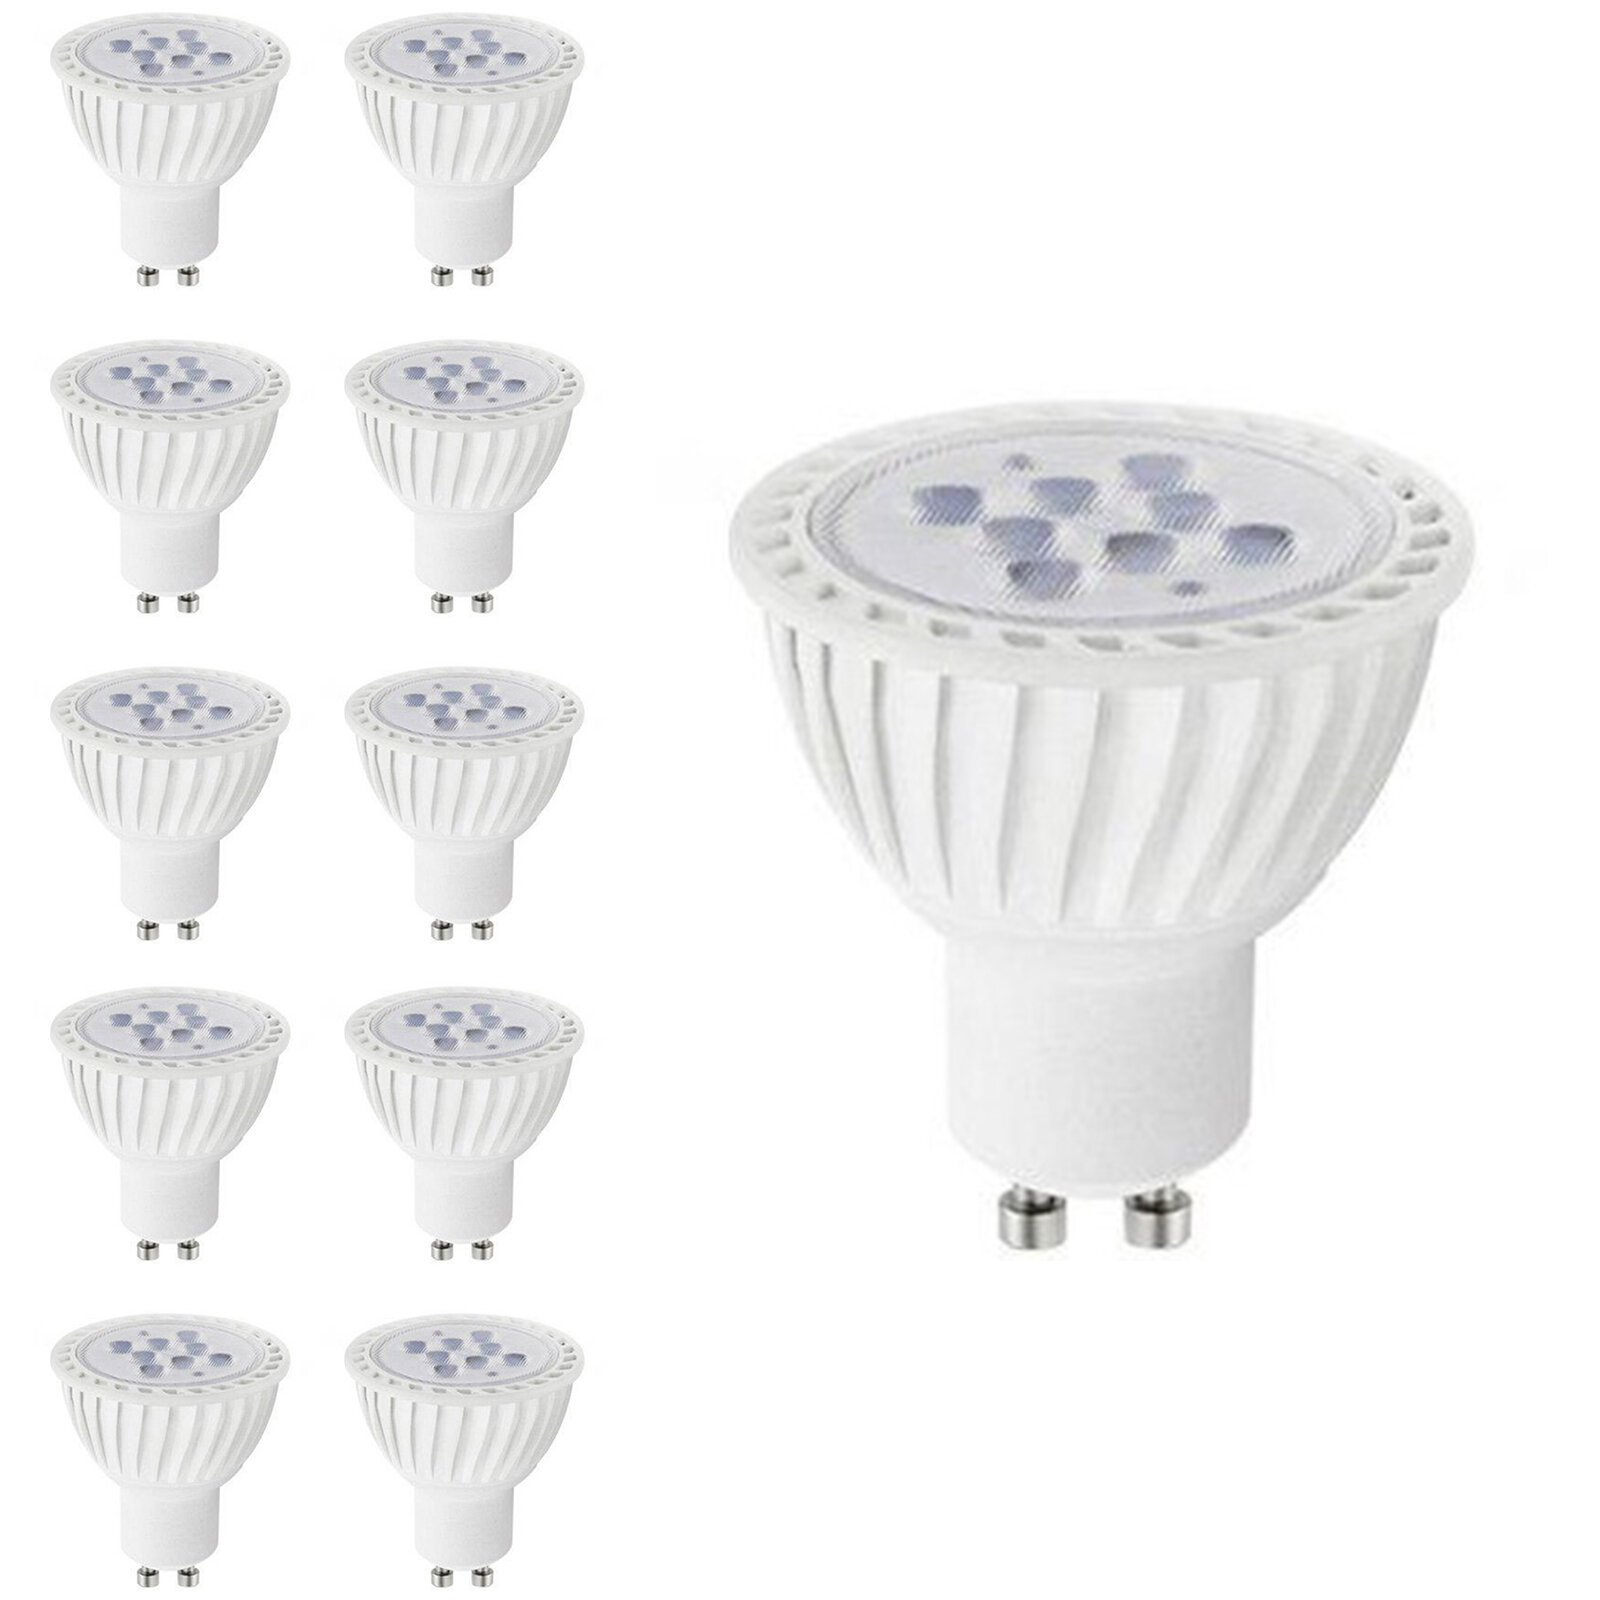 JDR-C 110V-120V 50W GU10-C Light Bulb, Replacement Lamp